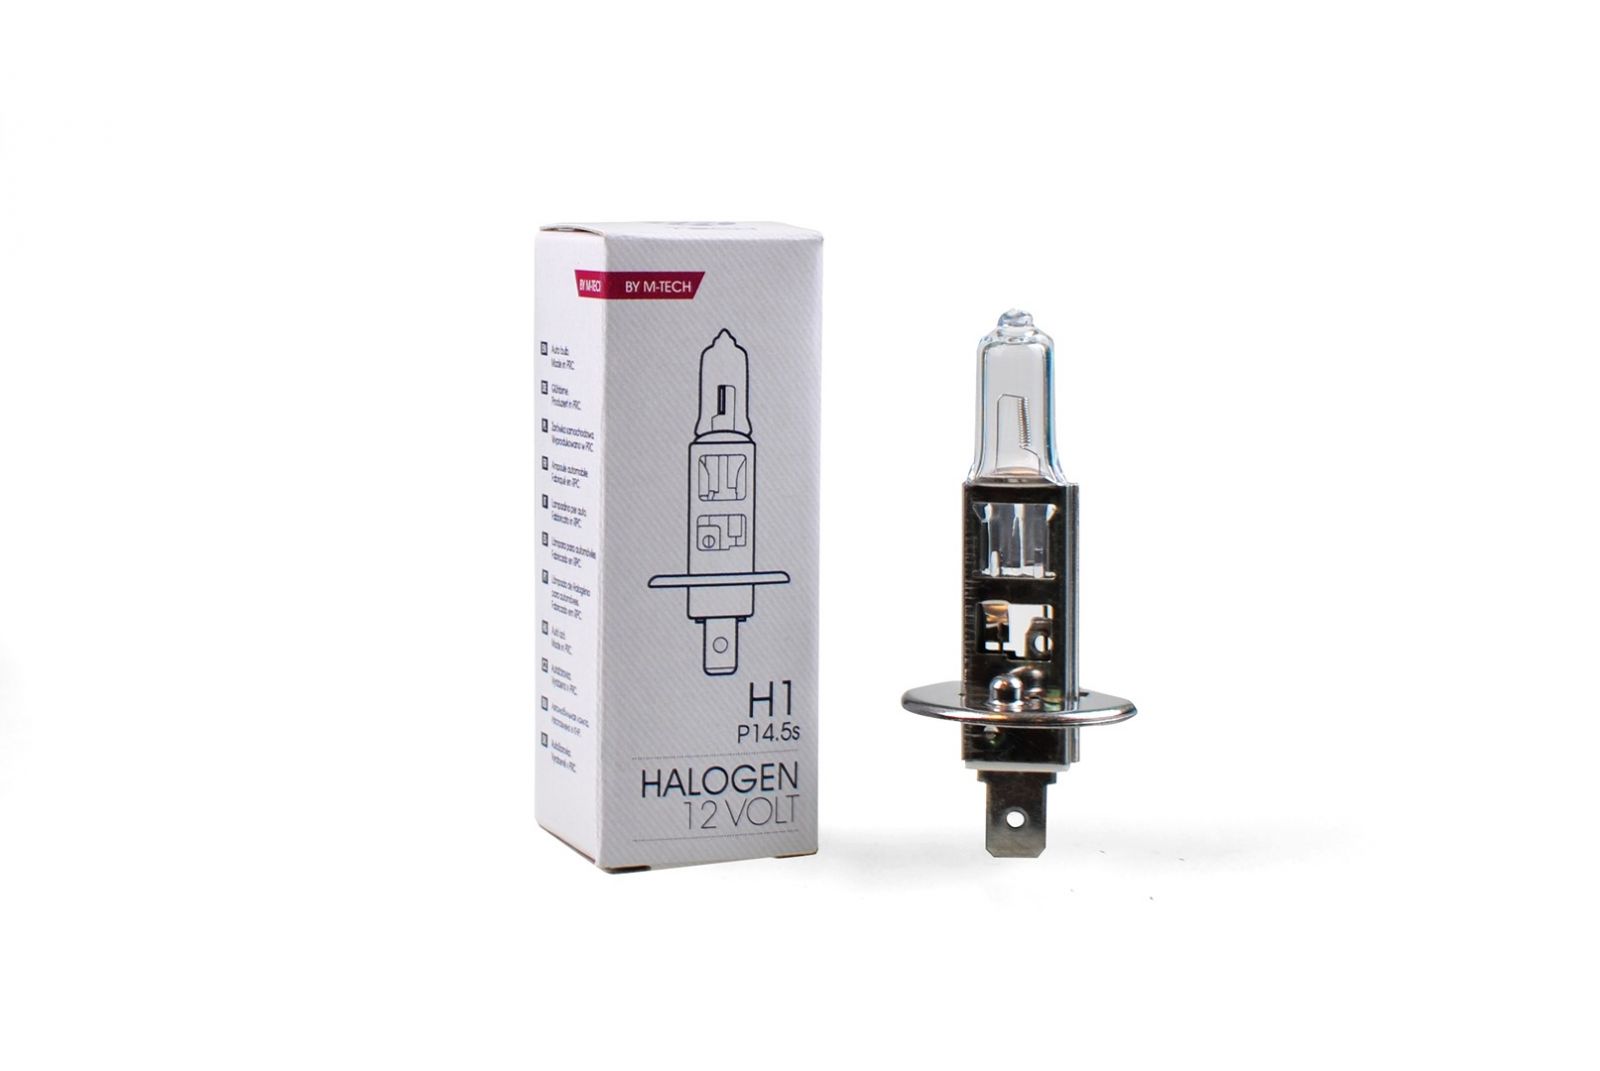 Žárovka halogenová H1 12V 55W P14.5s Z1, 50267